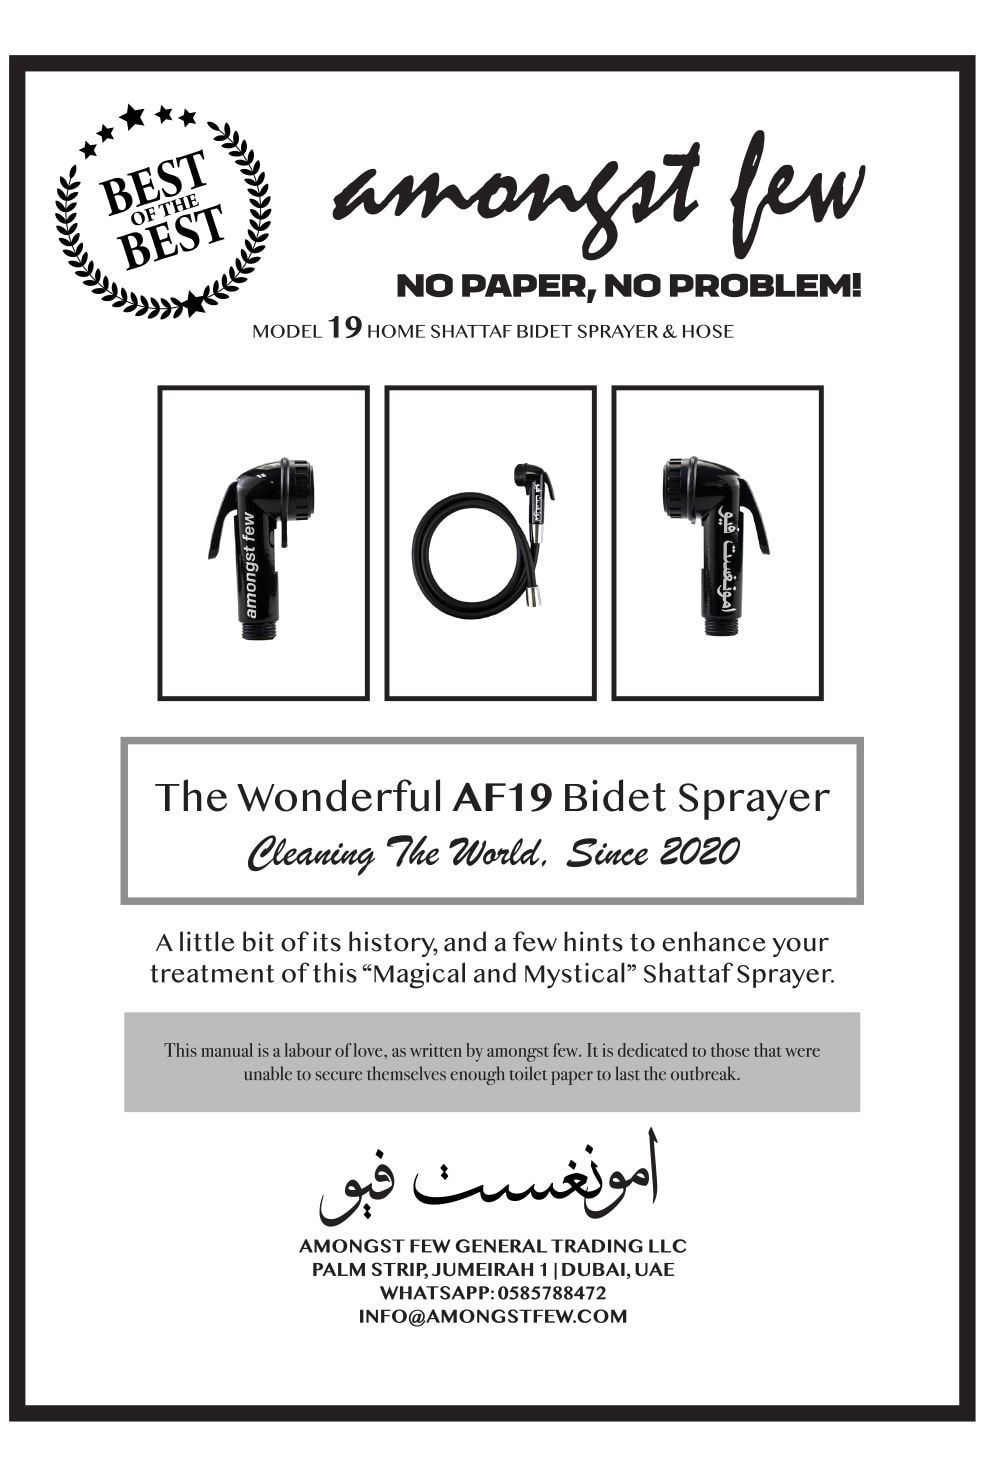 amongst few Model AF19-Shattaf bidet sprayer, hose kit toilet paper release date buy shower